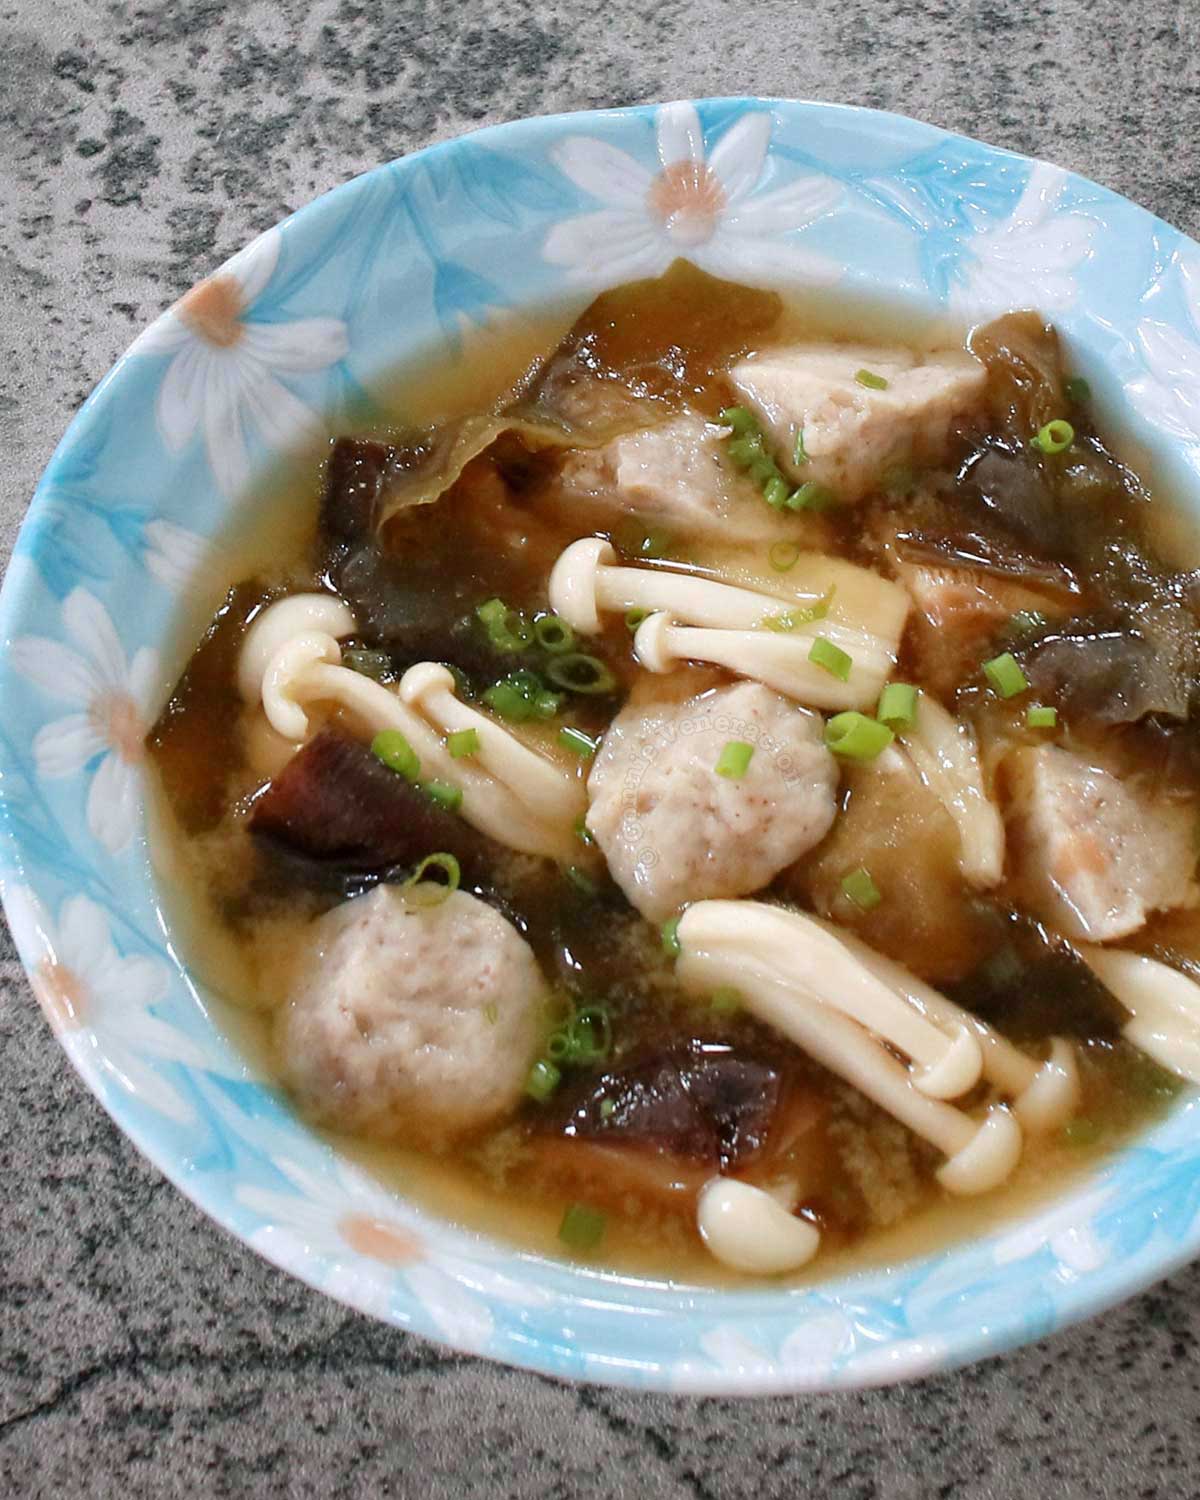 Miso soup with mushroom balls, shiitake and shimeji